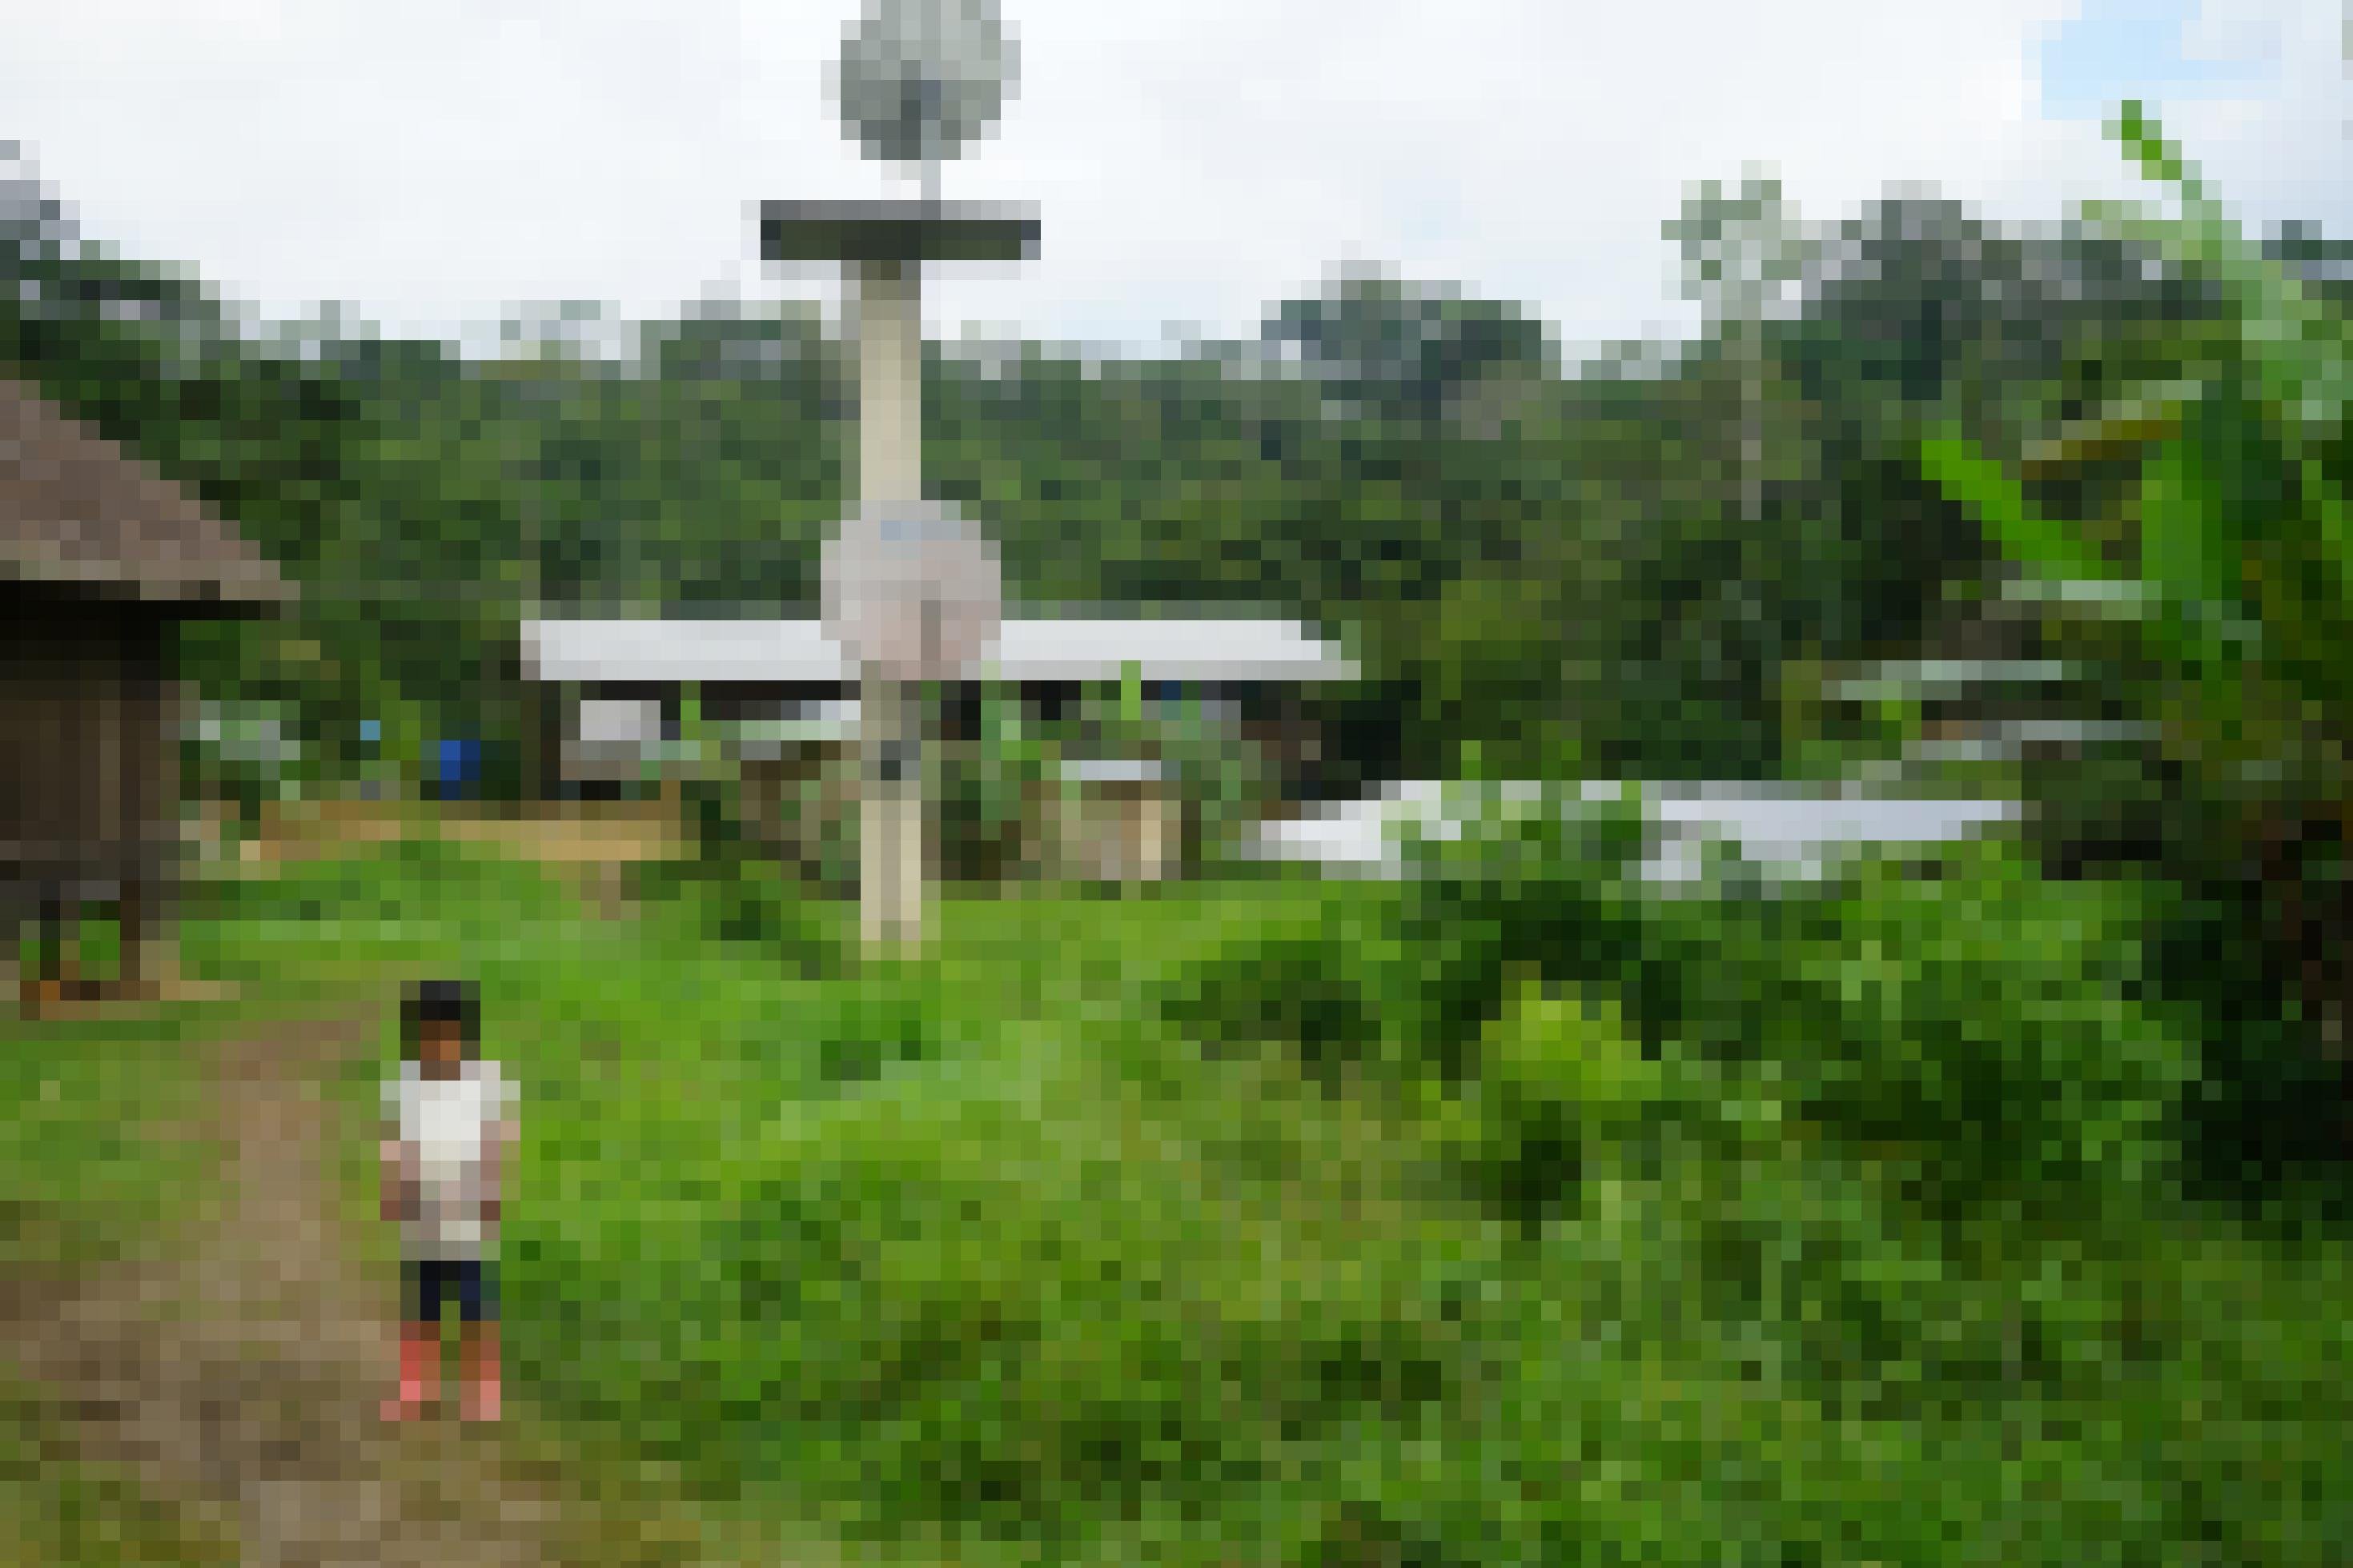 Solarpanel und Satellitenschüsseln neben Holzhütten, dahinter Urwald, im Vordergrund läuft ein indigenes Kind auf einem Pfad.